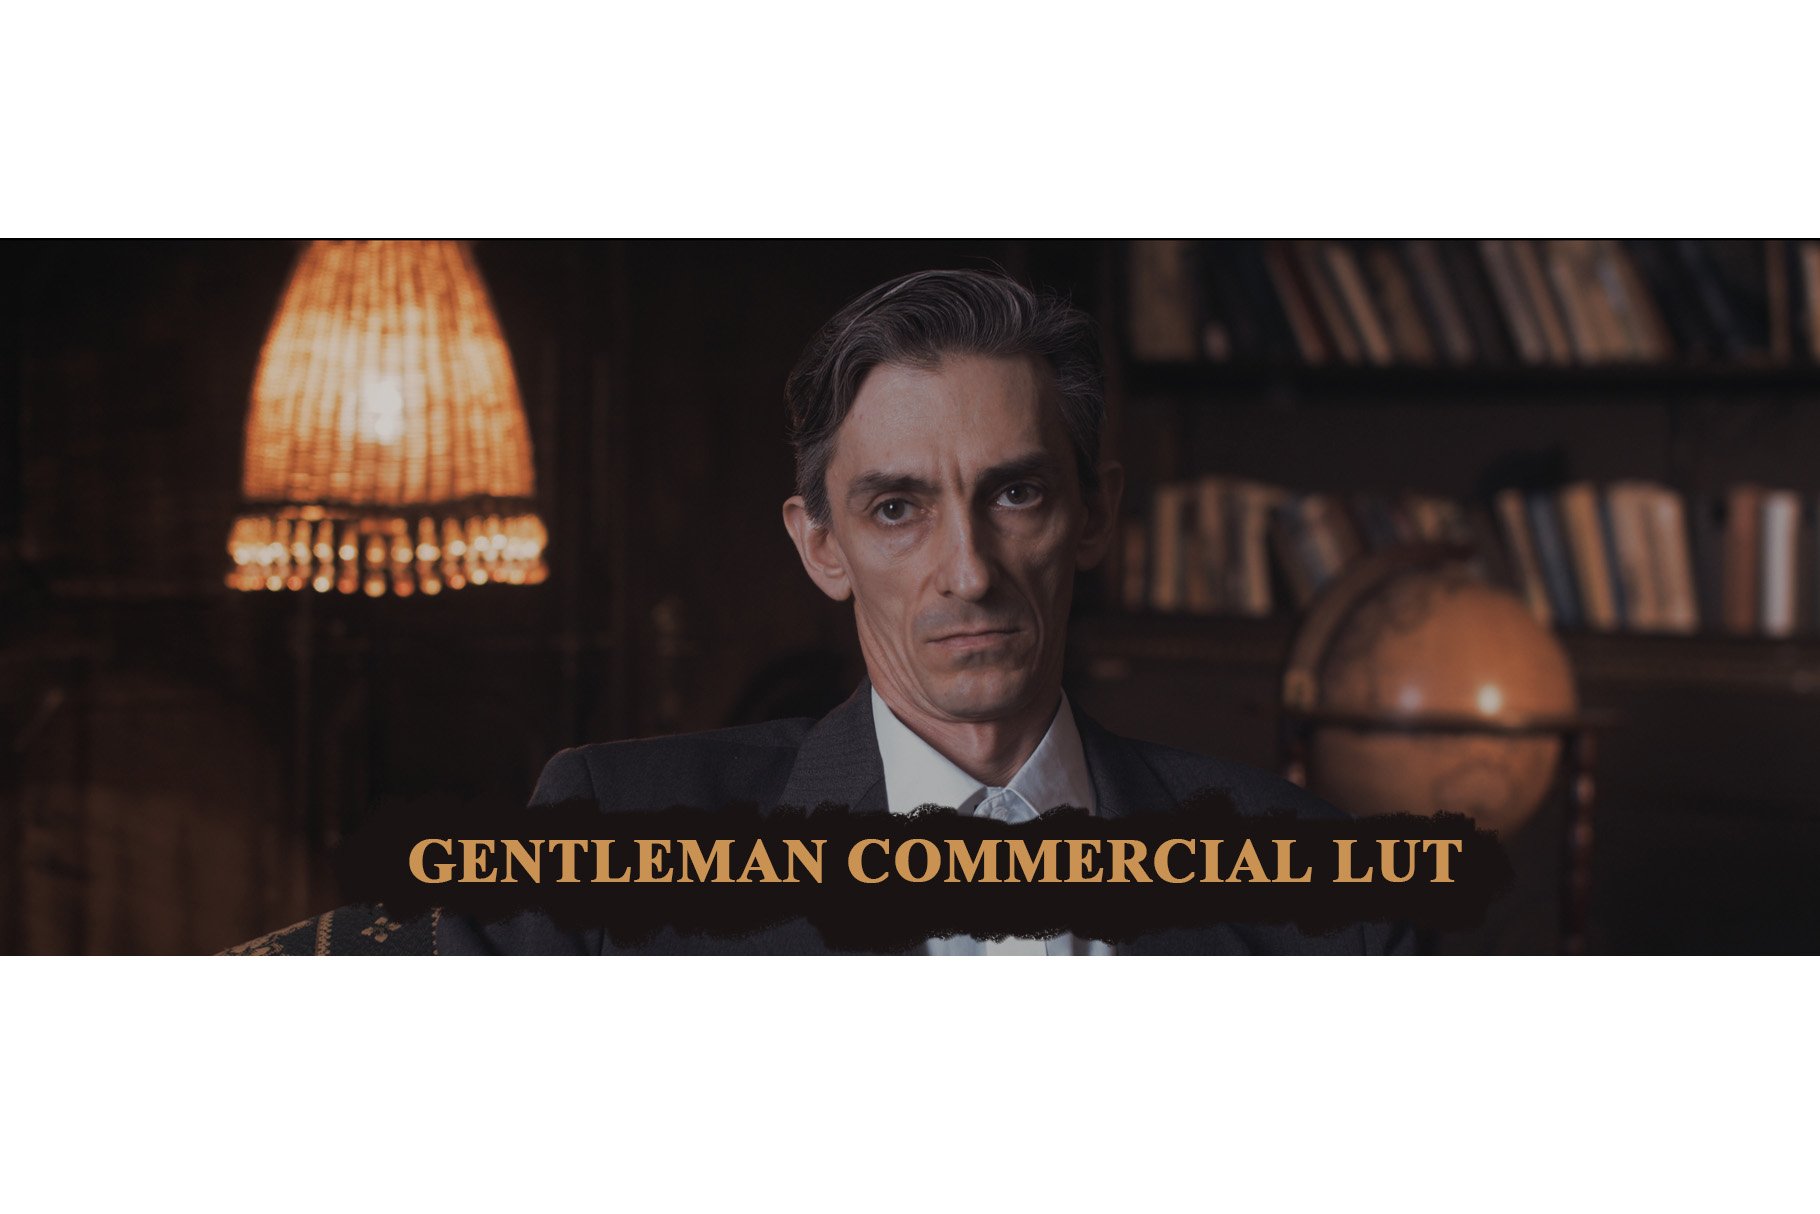 Gentleman Commercial LUTcover image.